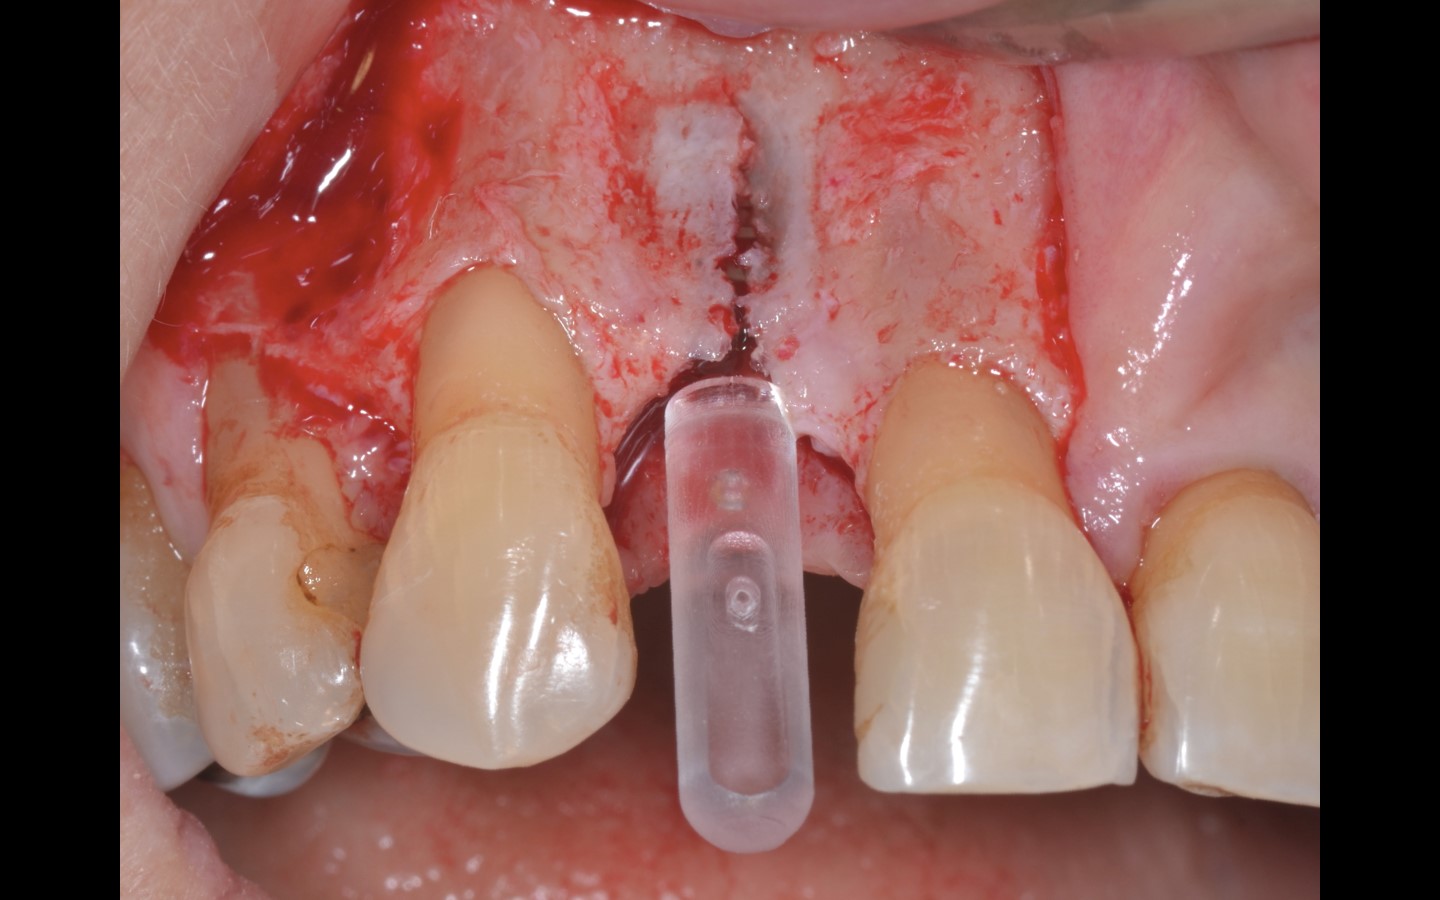 image8 - Reabilitação dento-alveolar com implante Arcsys, enxerto conjuntivo e substituto ósseo Nanosynt